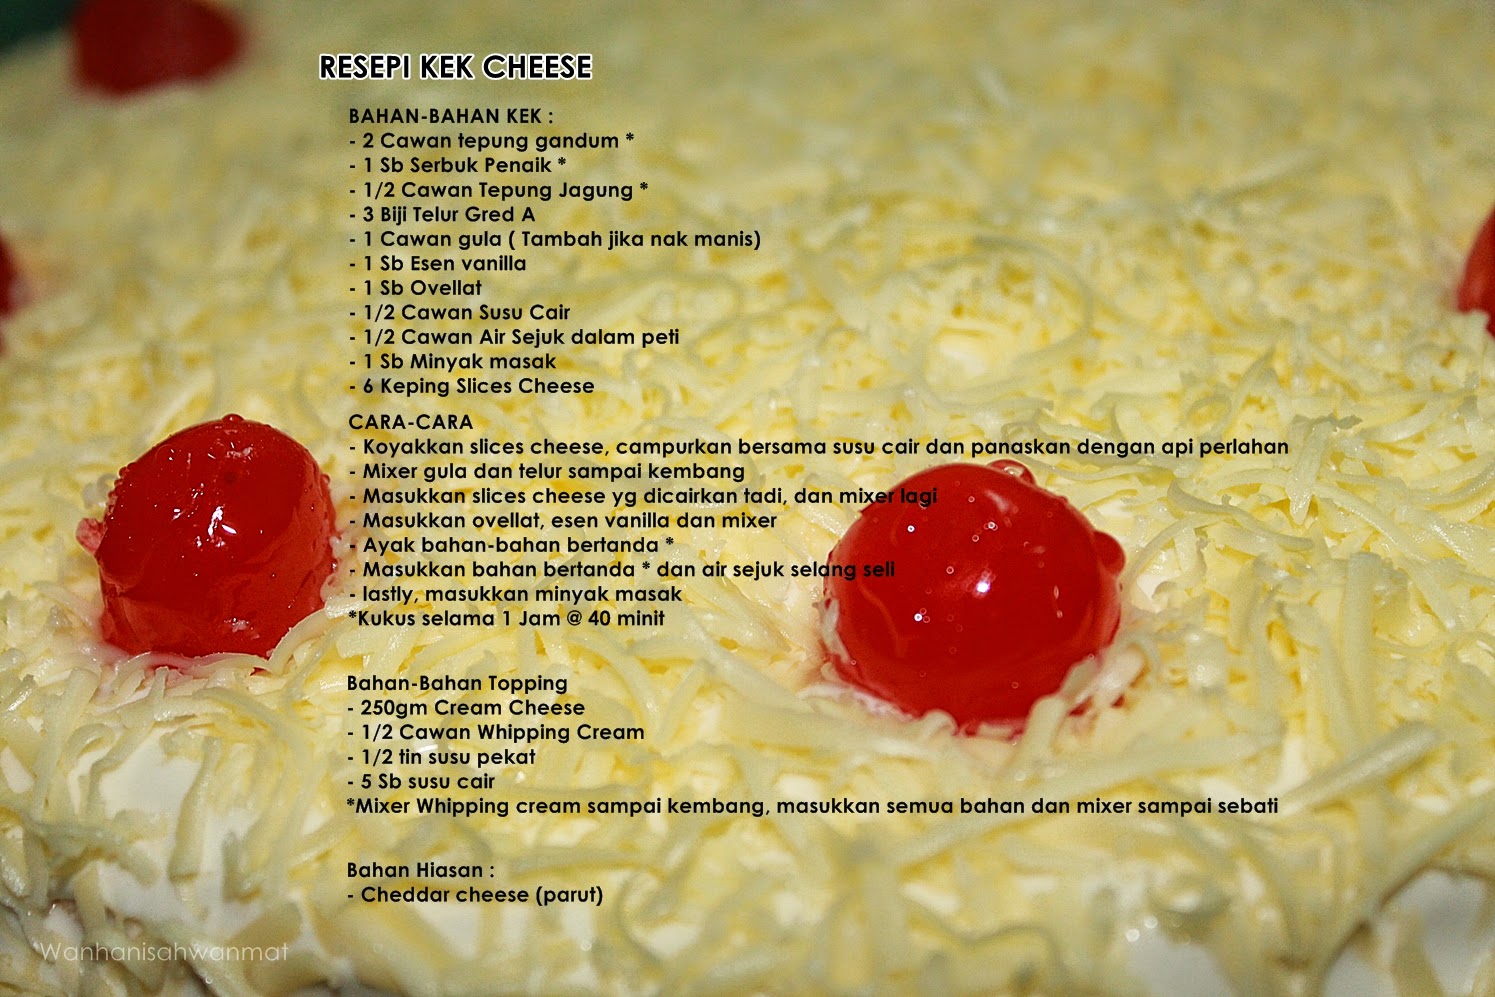 Mdmnissa: Resepi Kek Cheese Gebu